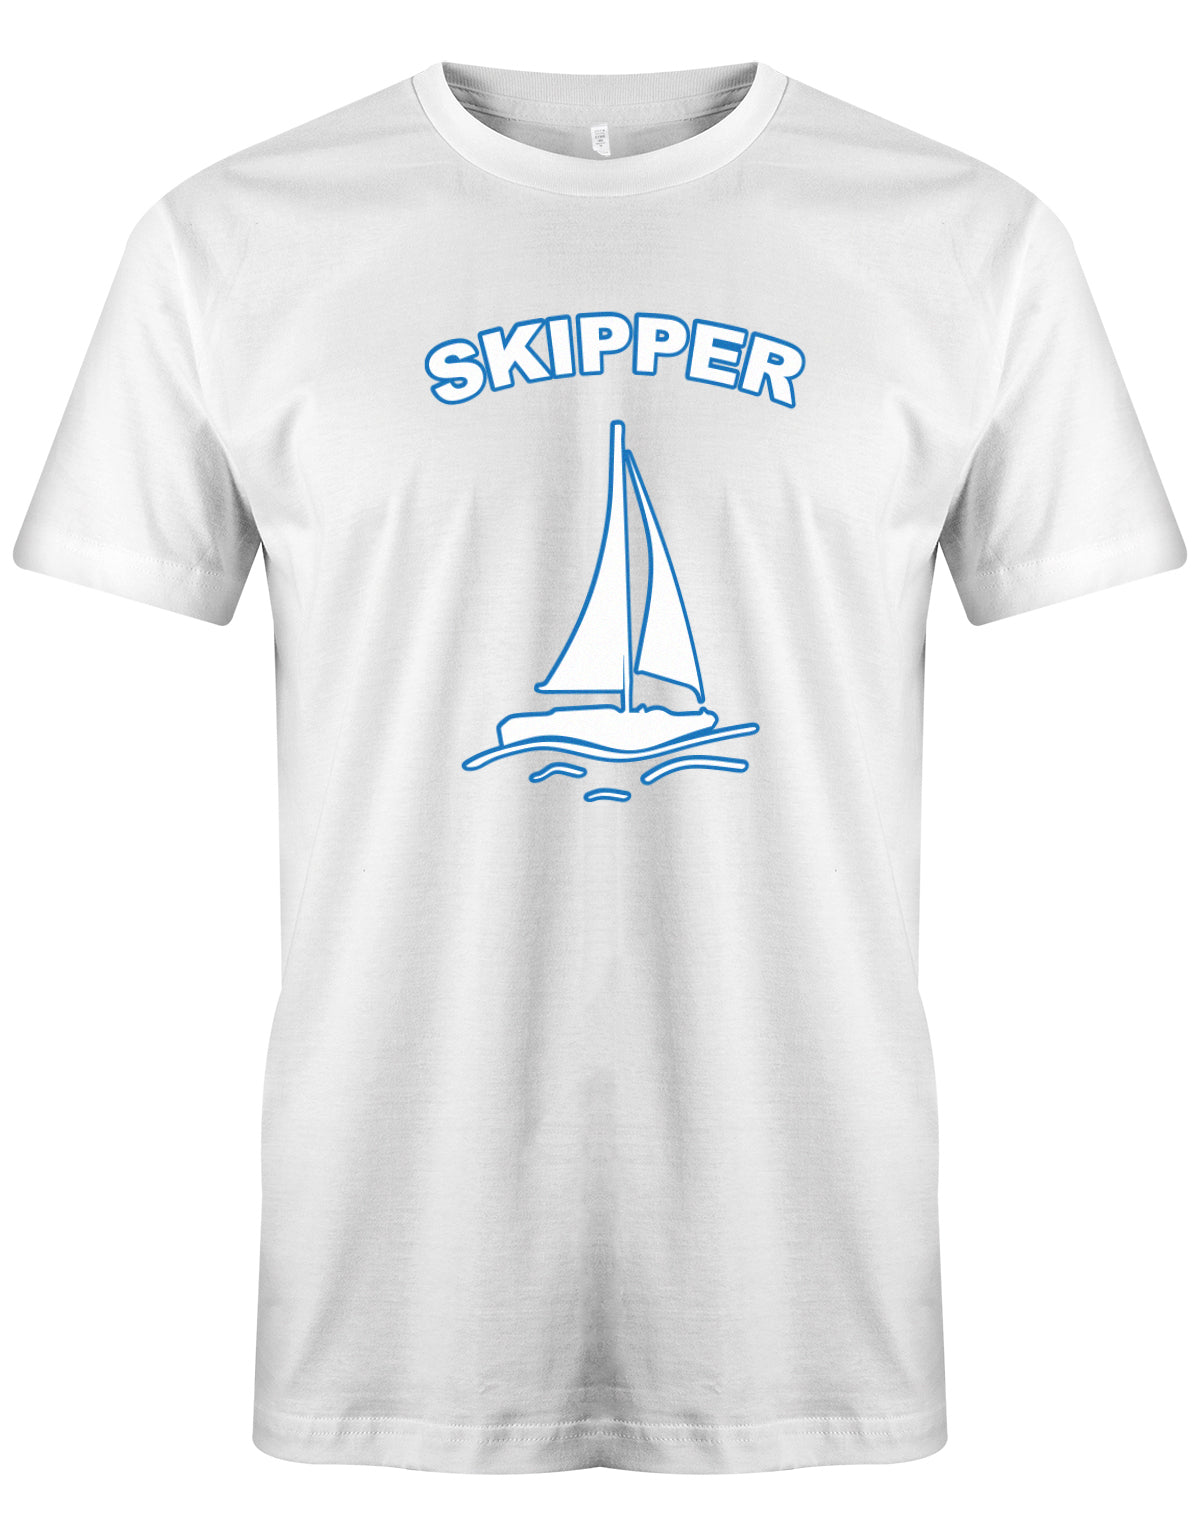 Skipper Segler - Segeln - Herren T-Shirt Weiss